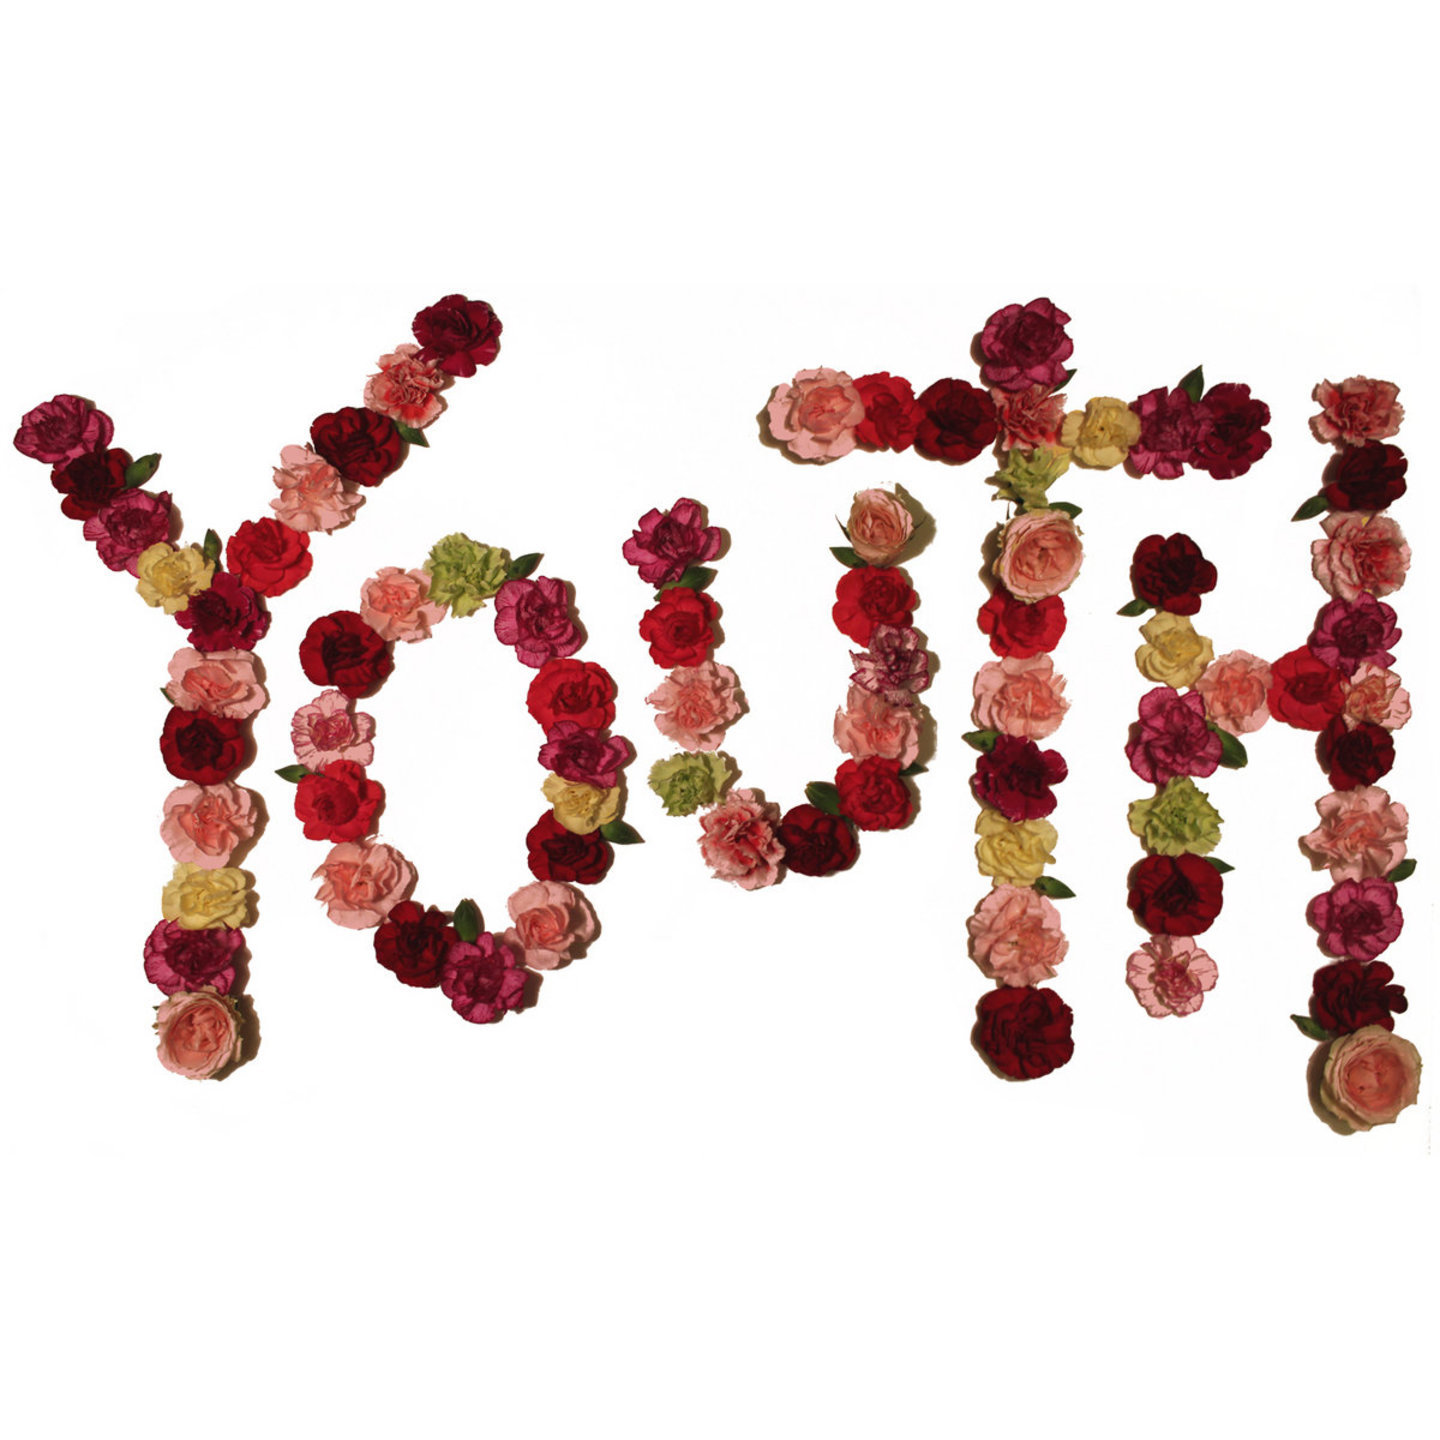 CITIZEN - Youth LP (Colour Vinyl)